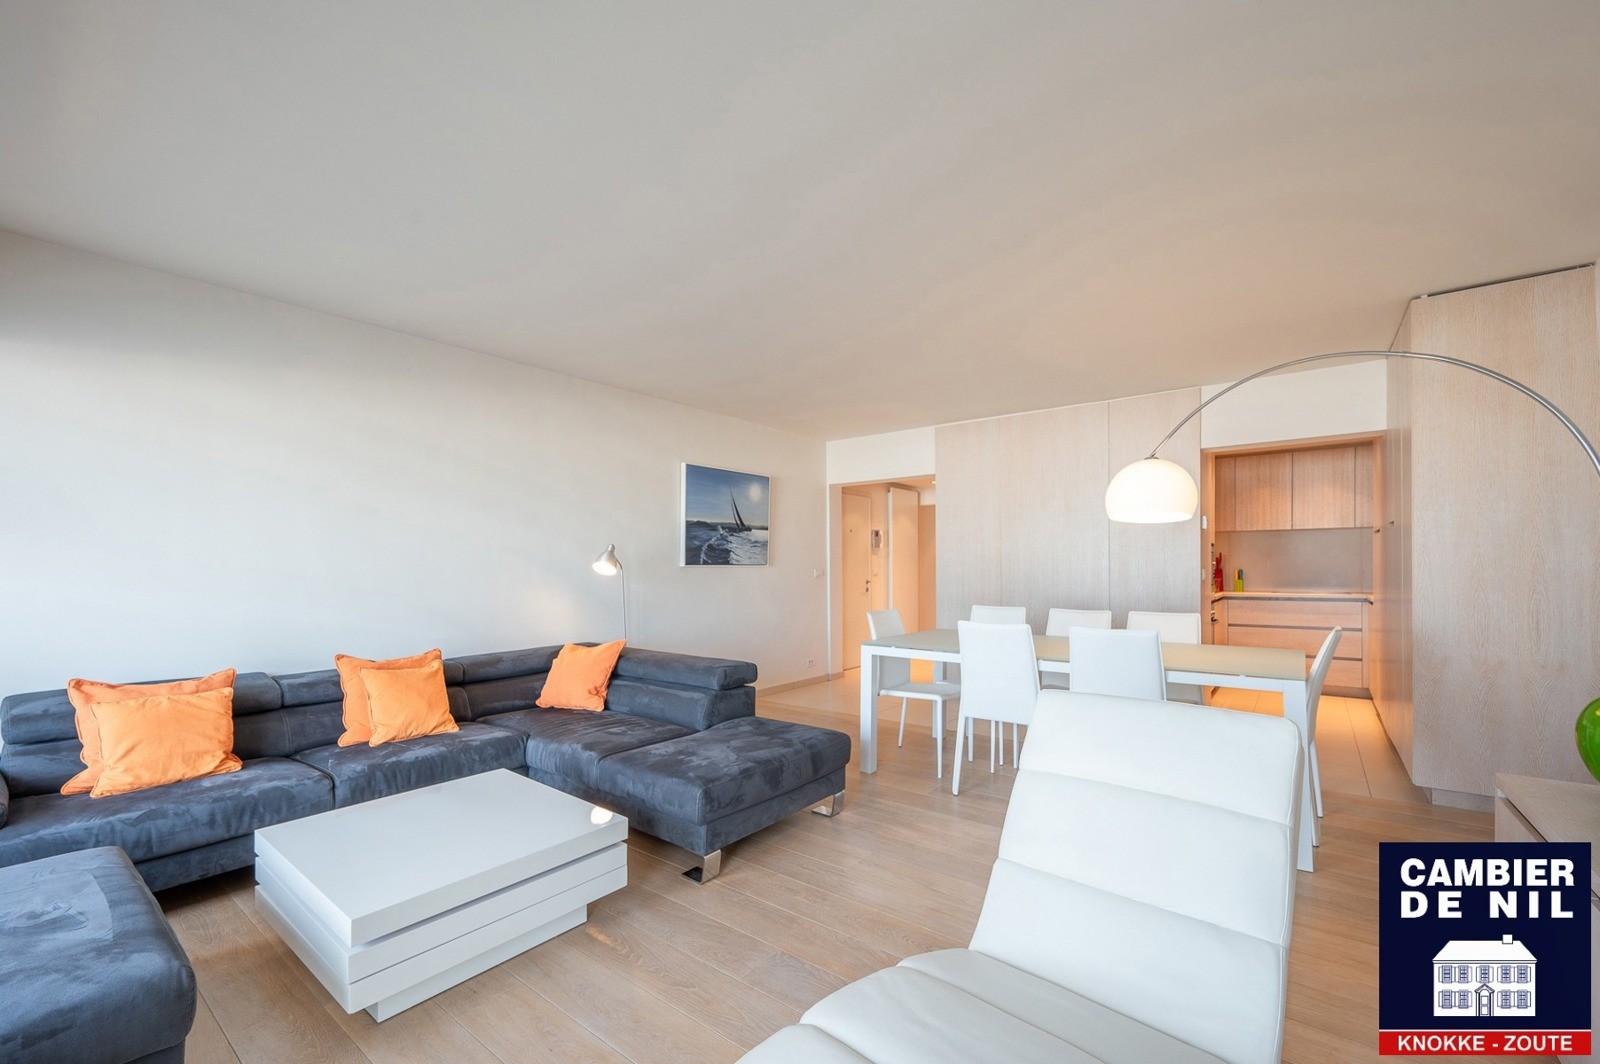 MEUBLÉ : Appartement spacieux avec vue mer et 4 chambres à coucher à Duinbergen ! 2